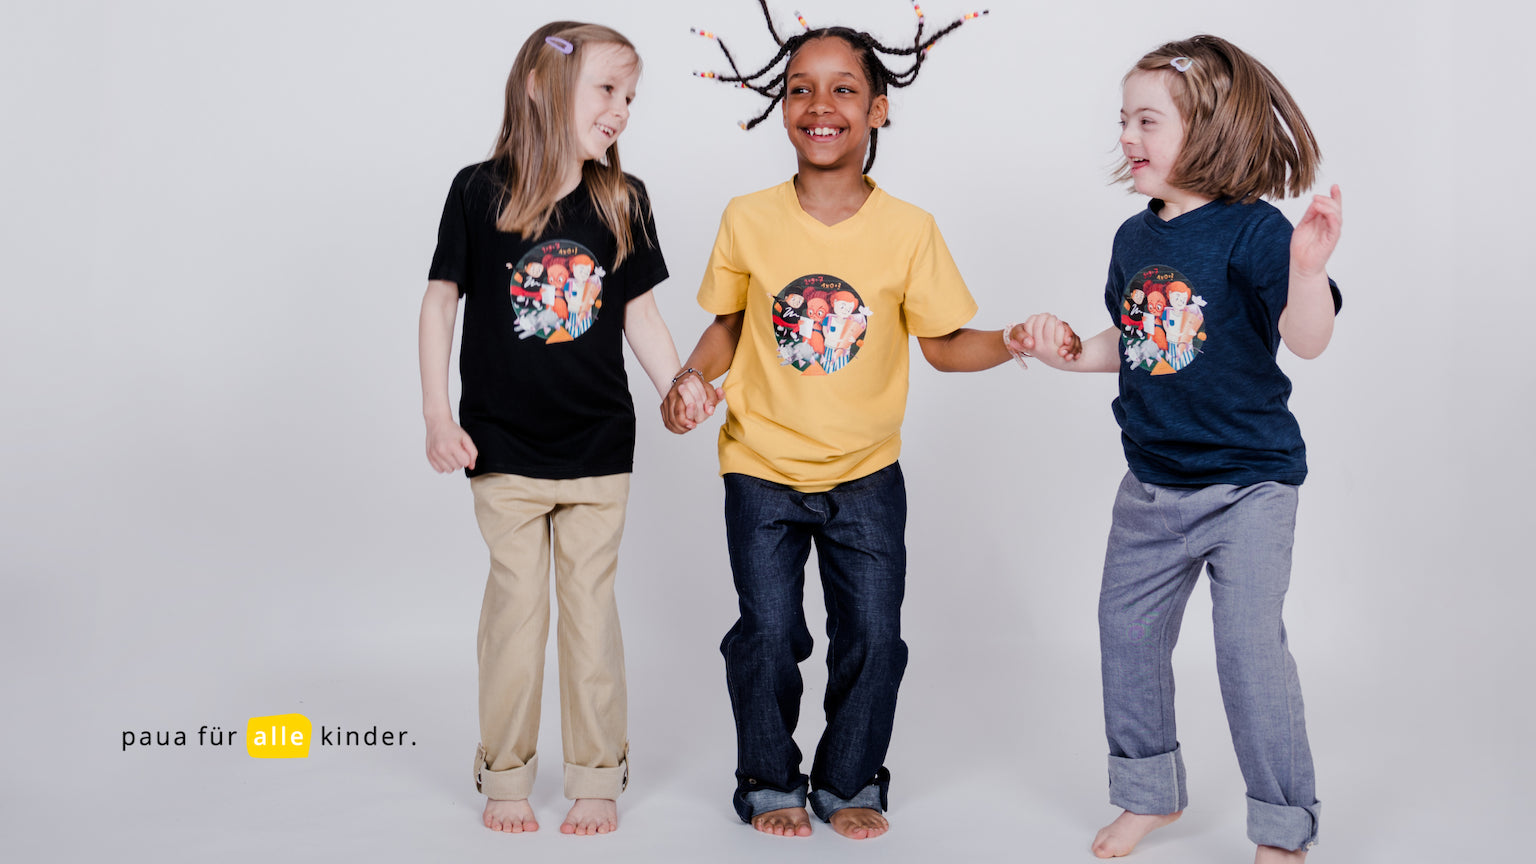 Drei Kinder haben Spaß mit pauakids Shirts und Hosen, unisex und inklusiv